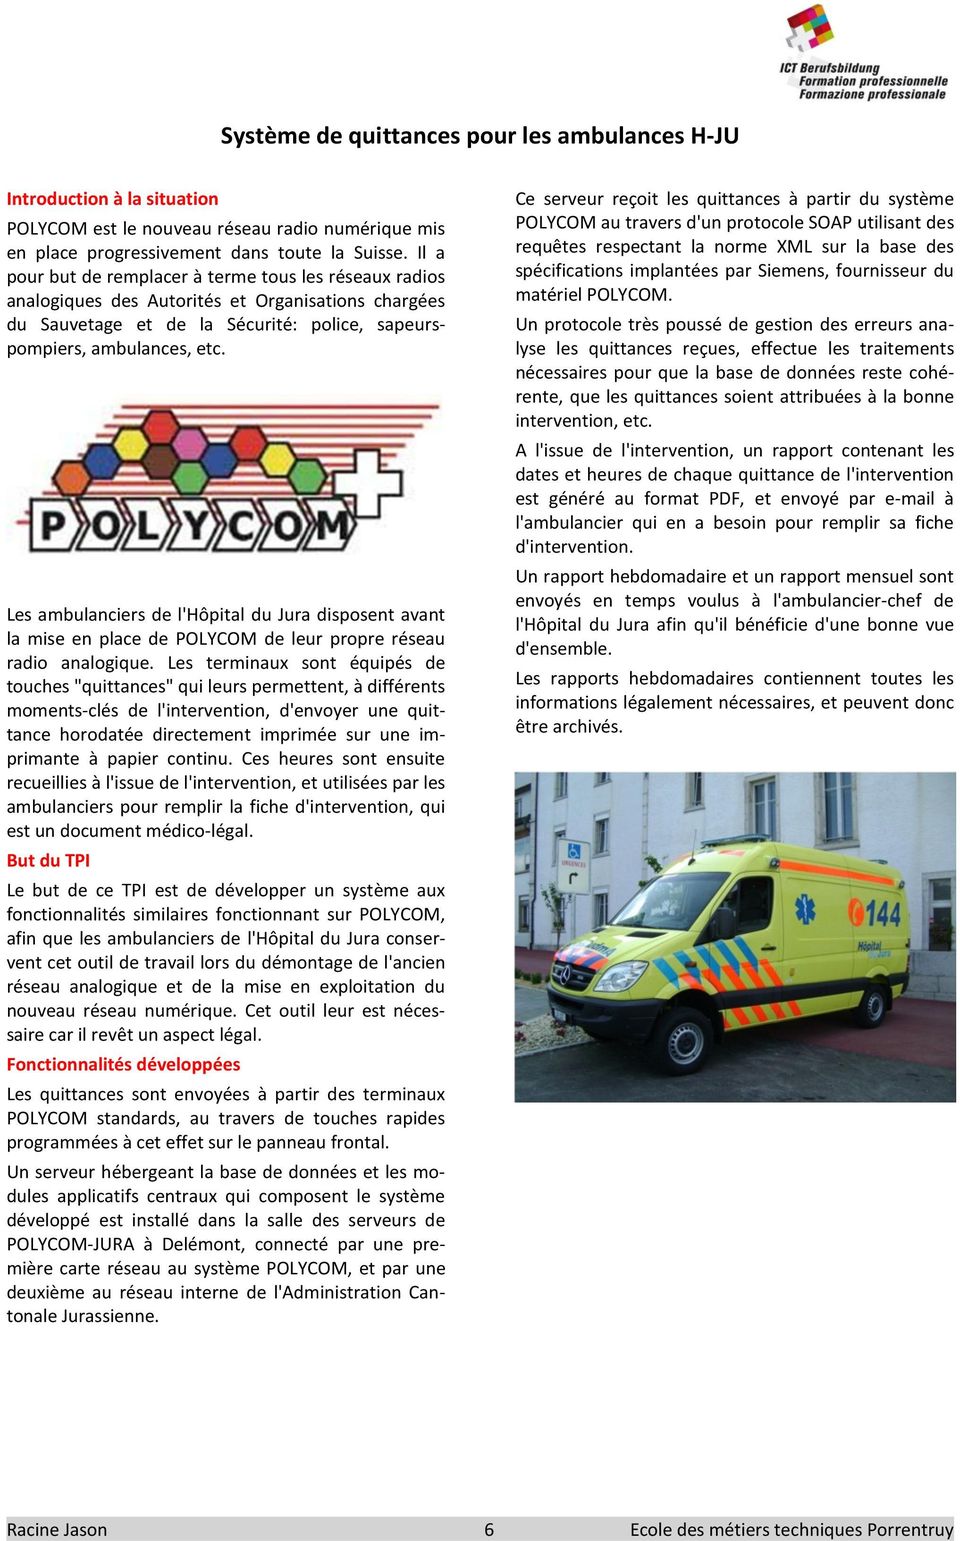 Les ambulanciers de l'hôpital du Jura disposent avant la mise en place de POLYCOM de leur propre réseau radio analogique.